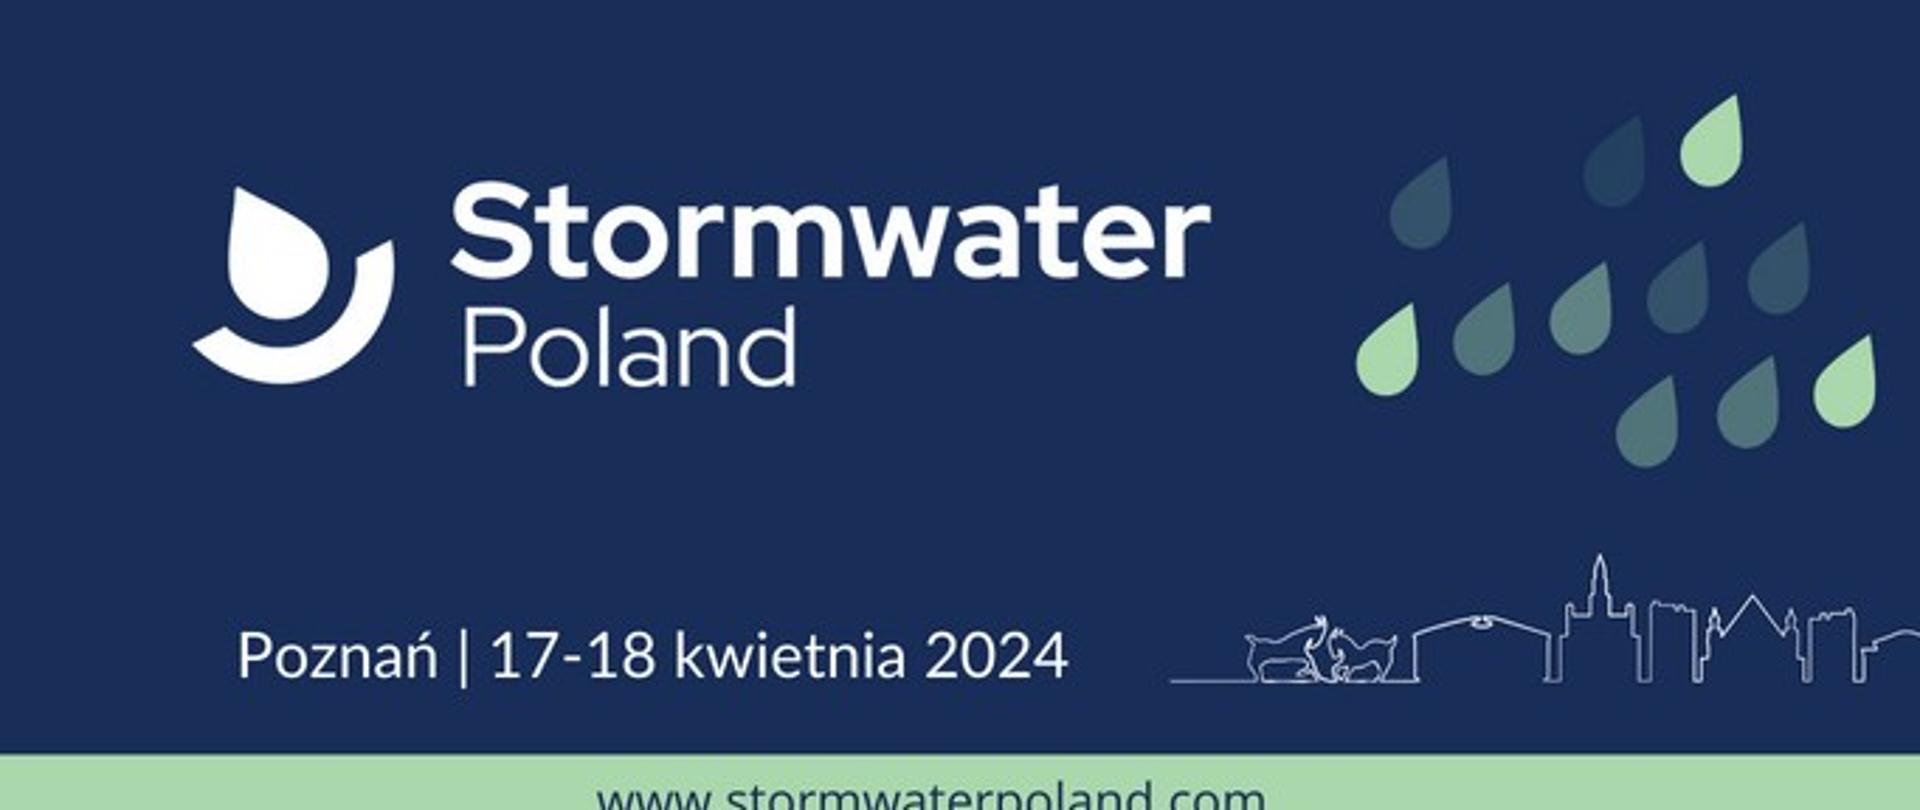 Plakat informacyjny Stormwater Poland Poznań 17-18 kwietnia 2024